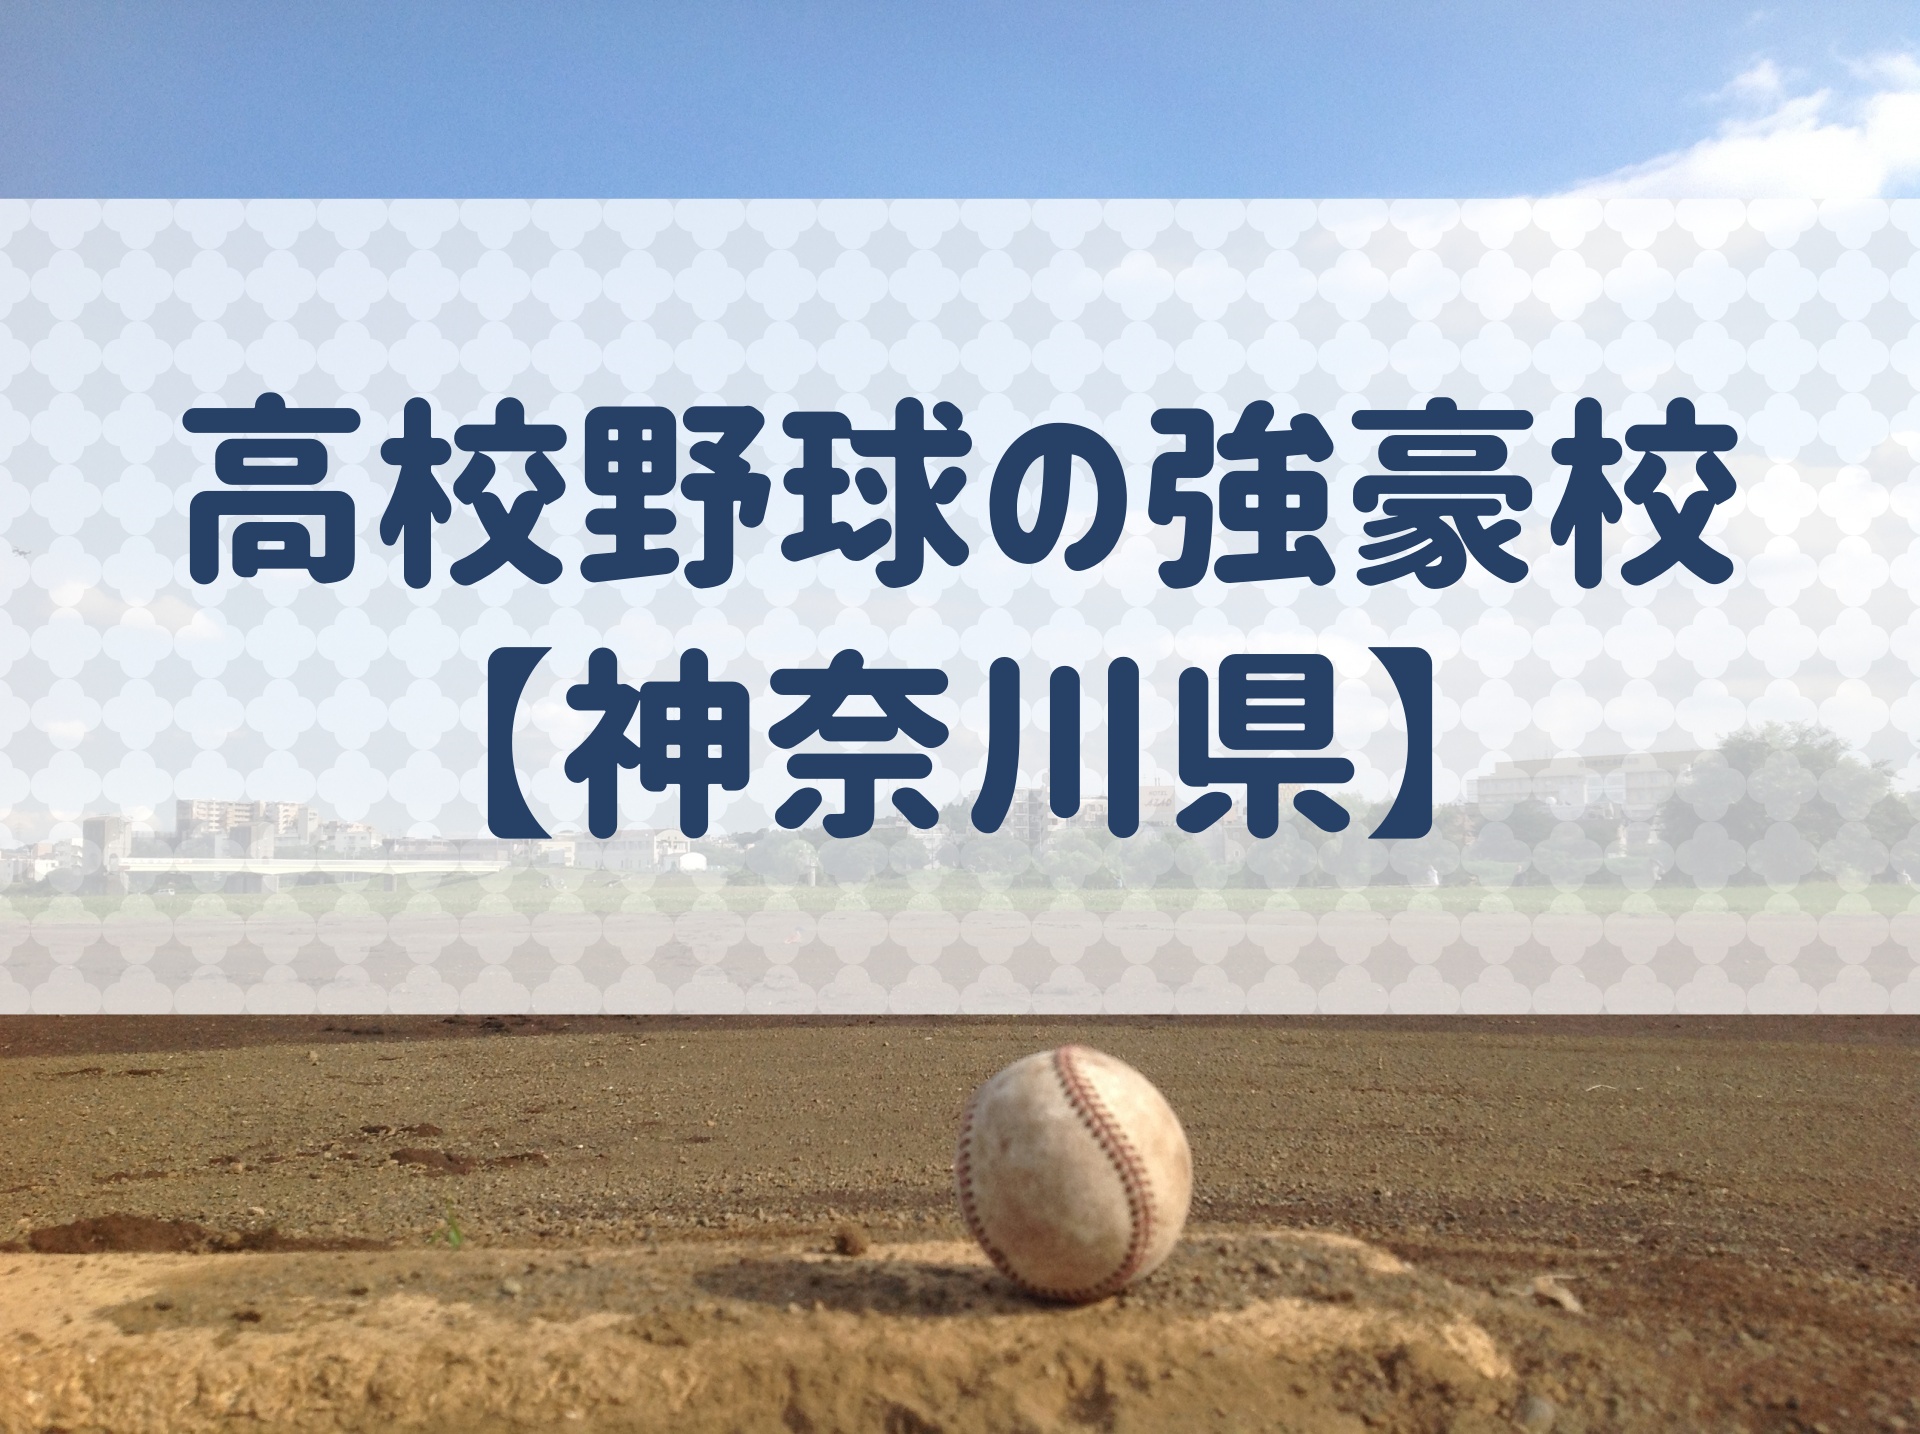 神奈川県 高校野球の強豪校 特徴と実績などを紹介 野球用語 Net